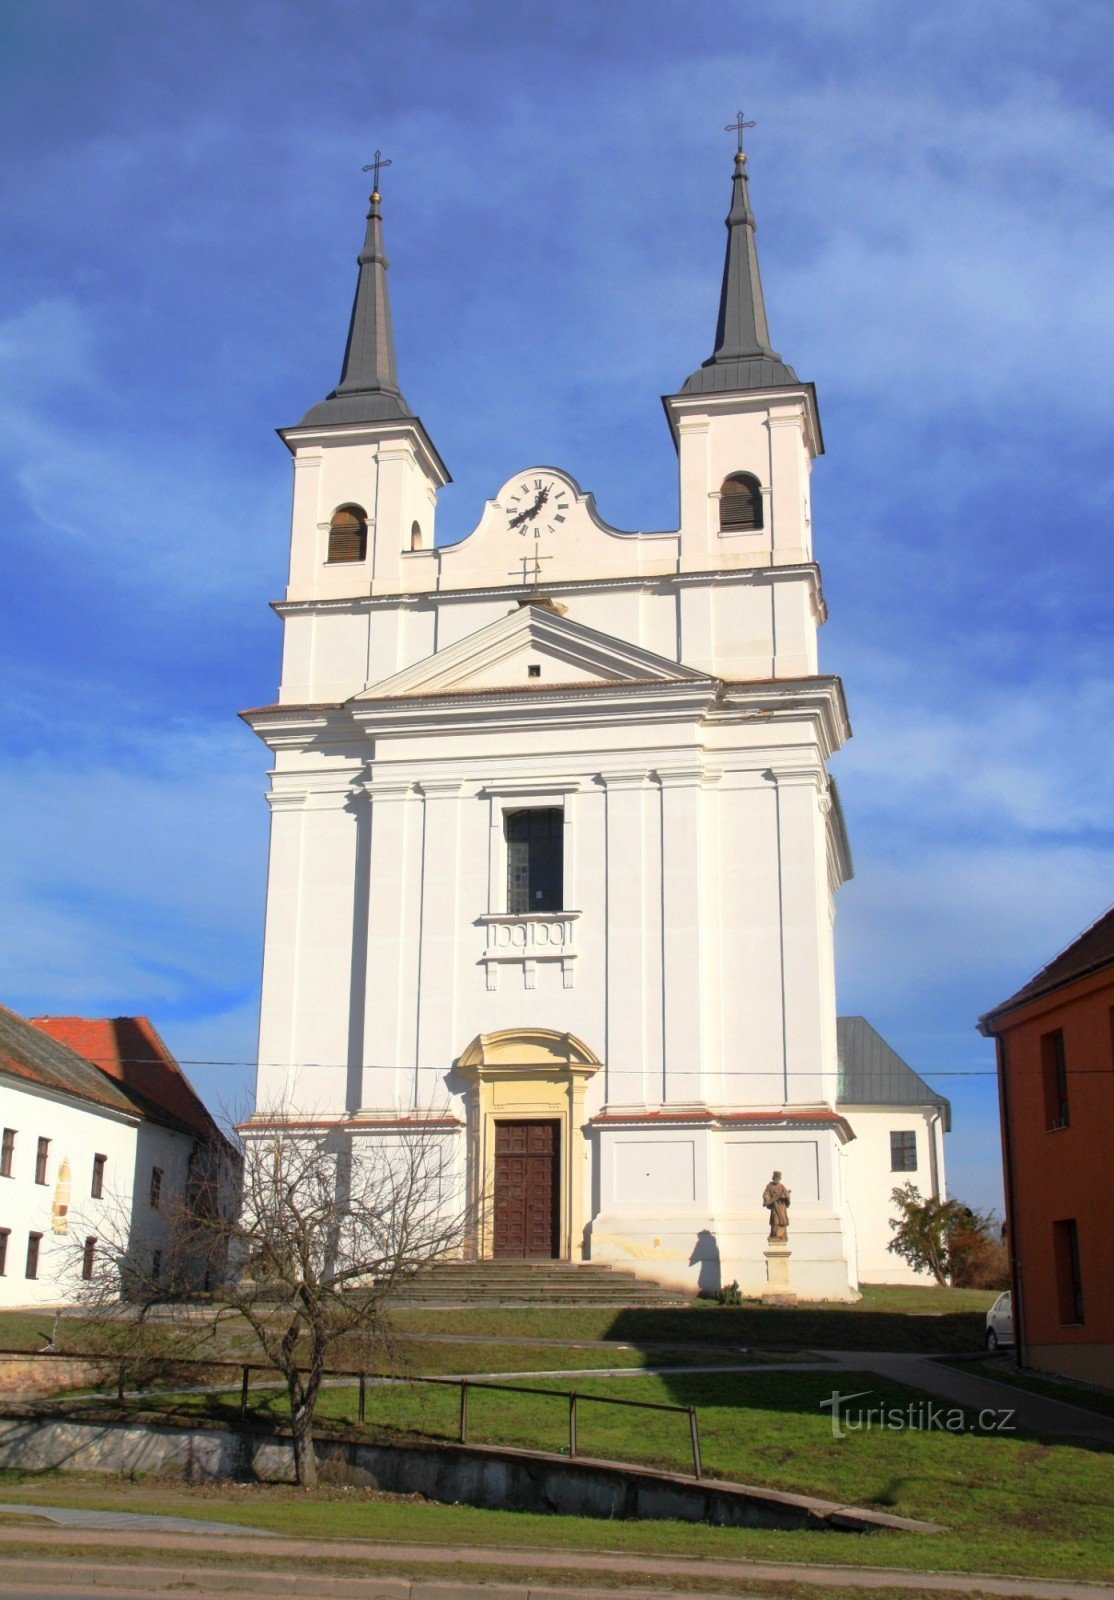 La característica dominante de la ciudad es la Iglesia de la Santísima Trinidad.